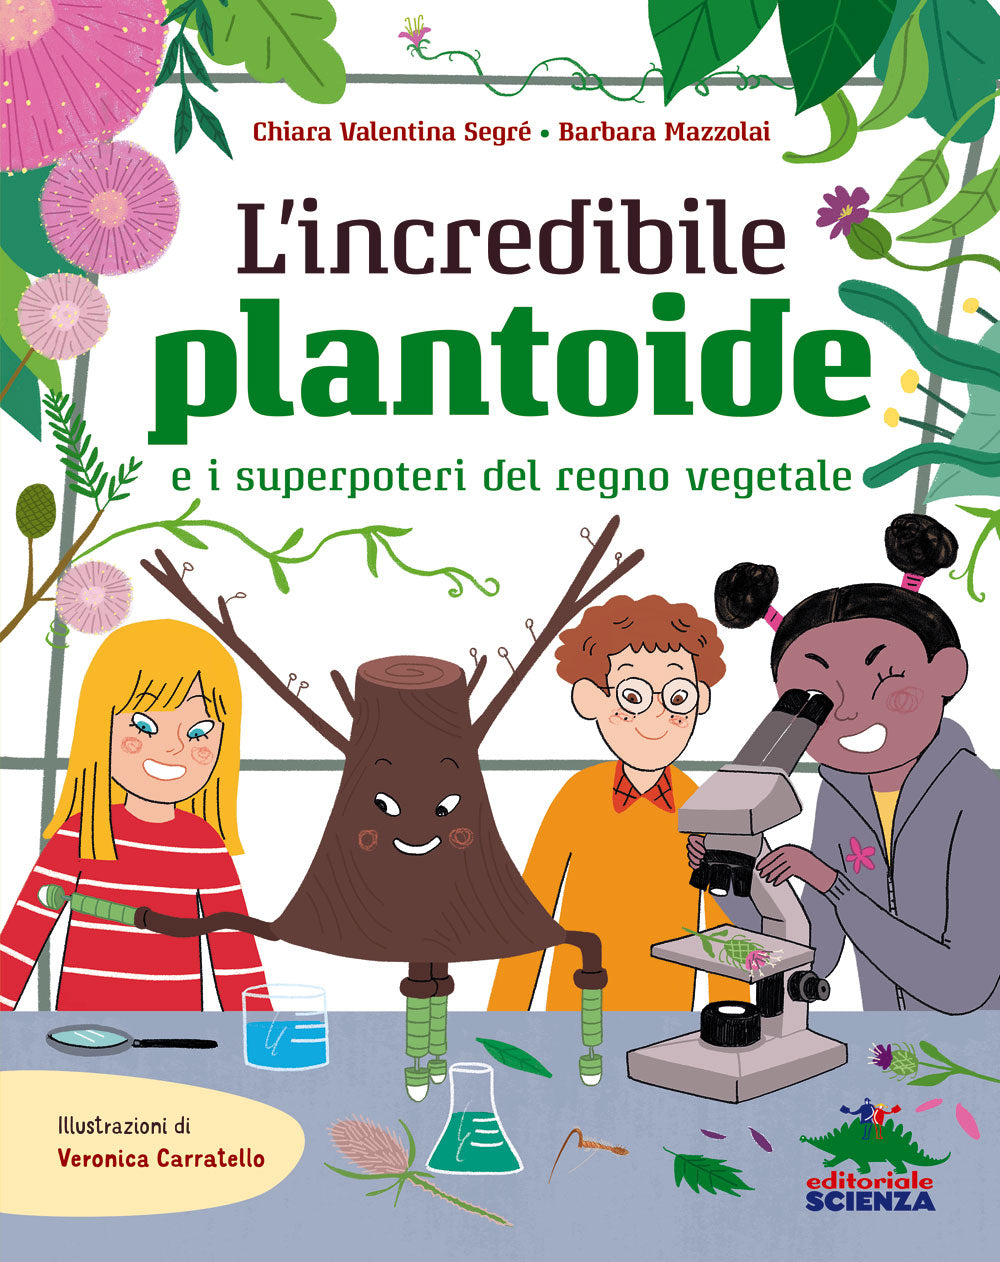 L’incredibile plantoide::E i superpoteri del regno vegetale